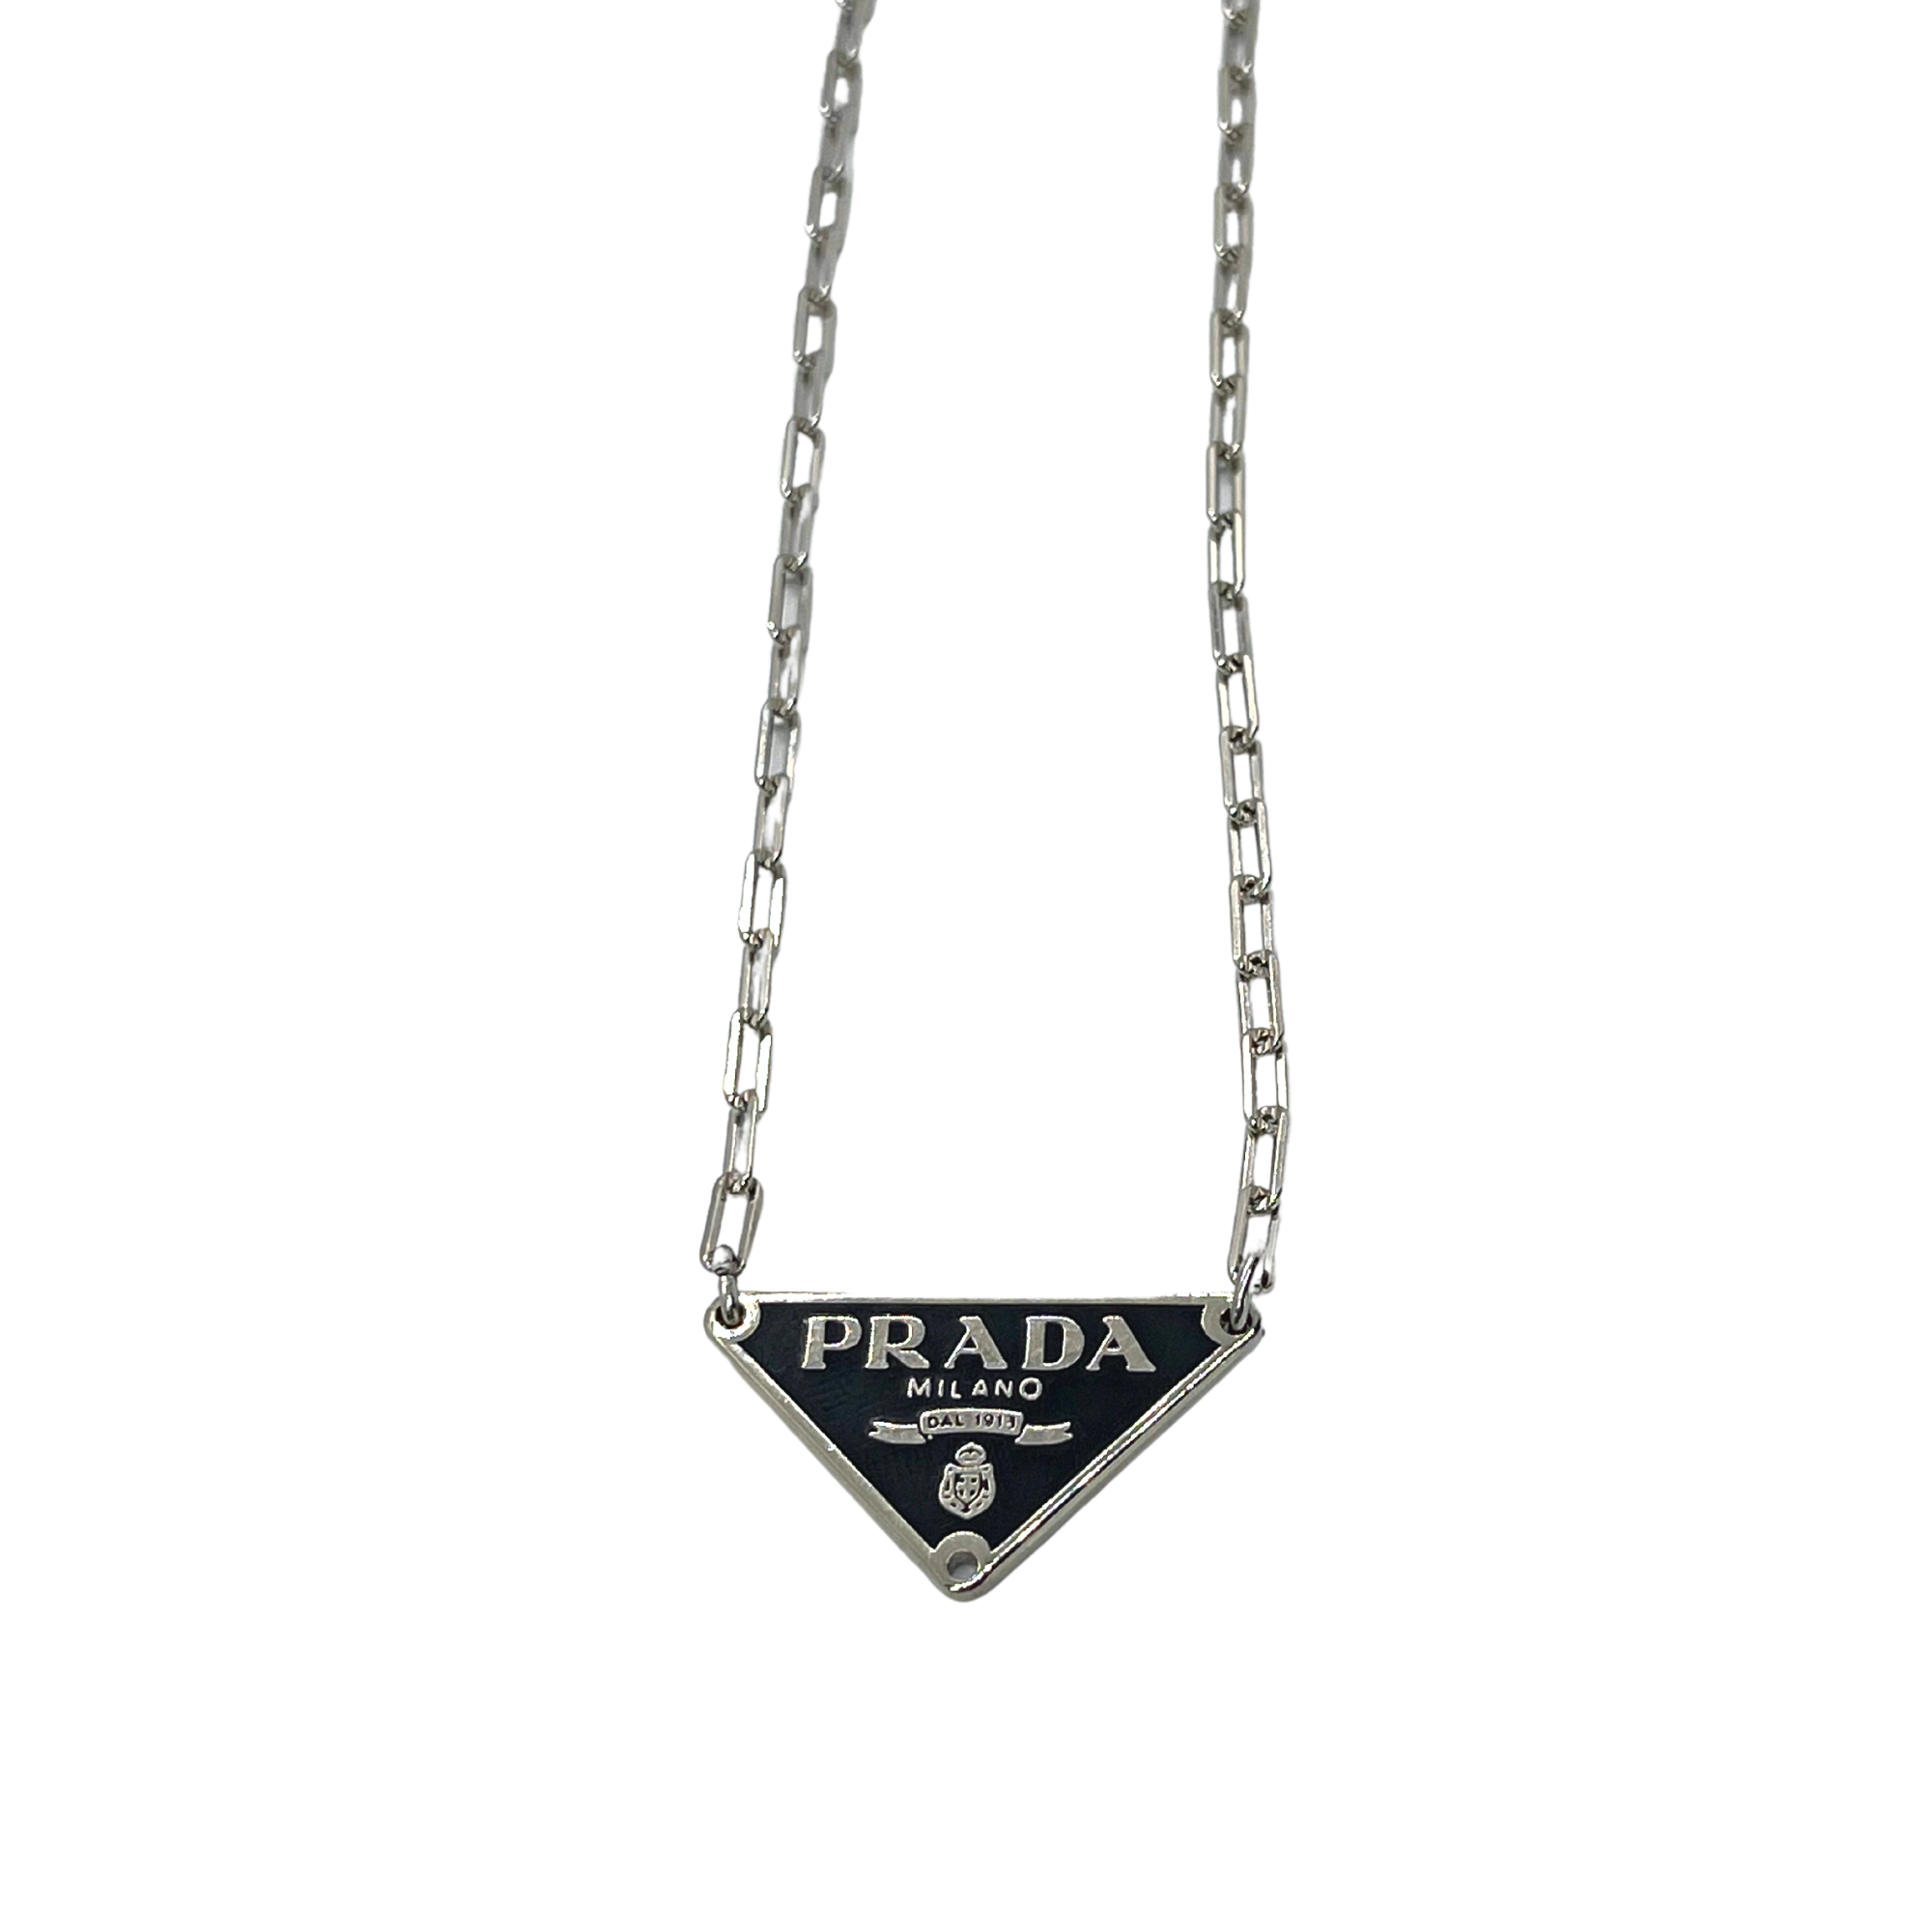 Prada Silver Necklace | Silver necklace, Necklace, Silver